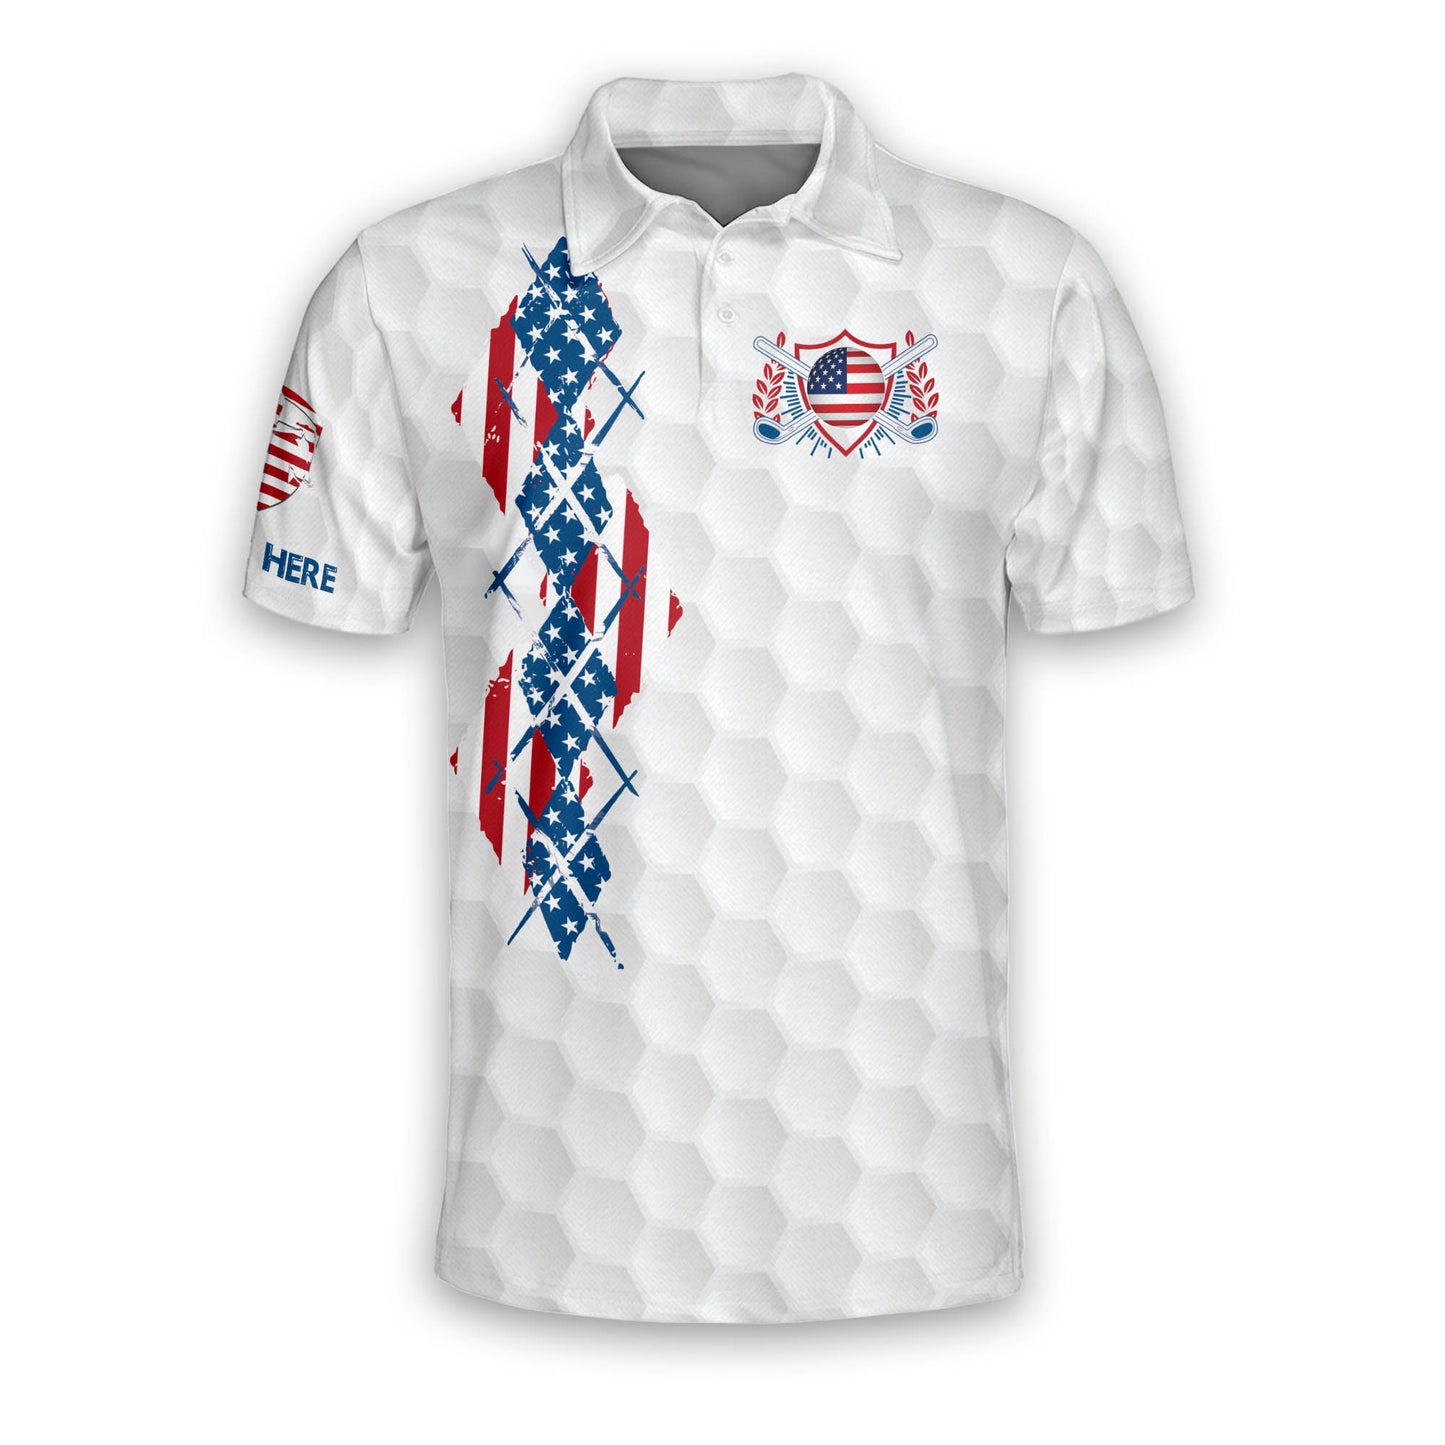 Make America Golf Again Golf Polo Shirt GM0121